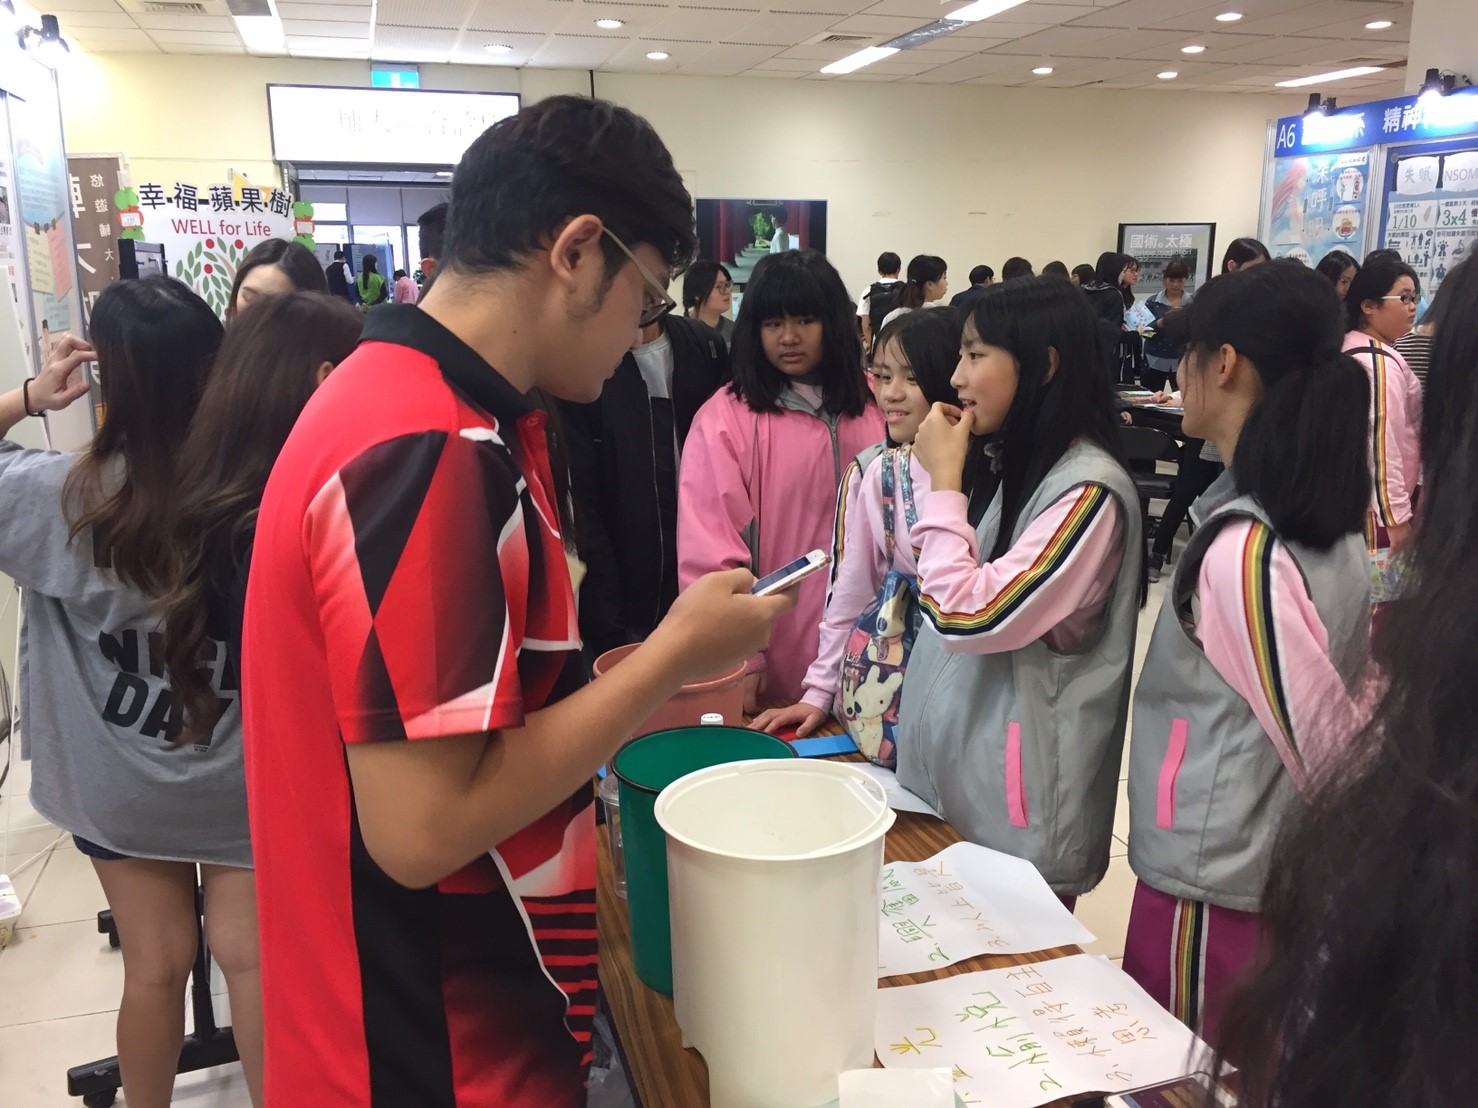 活動當天青山國中教師帶領兩個班級參加博覽會